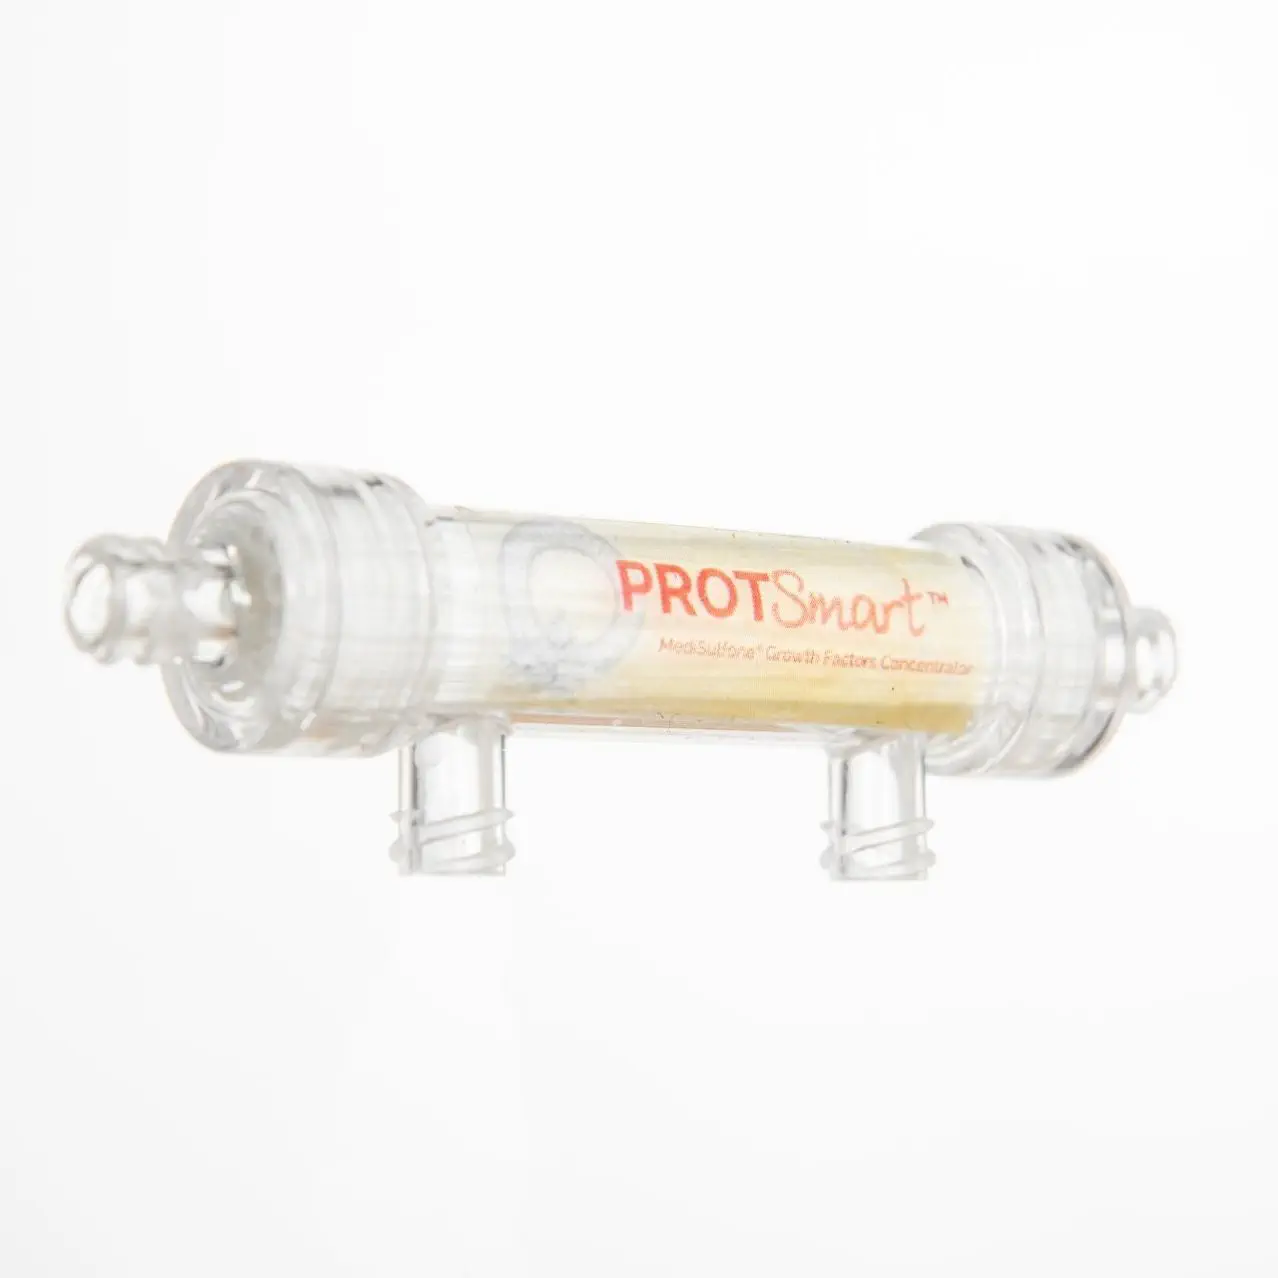 เครื่องล้างตัวกรองเลือด  Membrane filter ProtSmart™  MEDICA